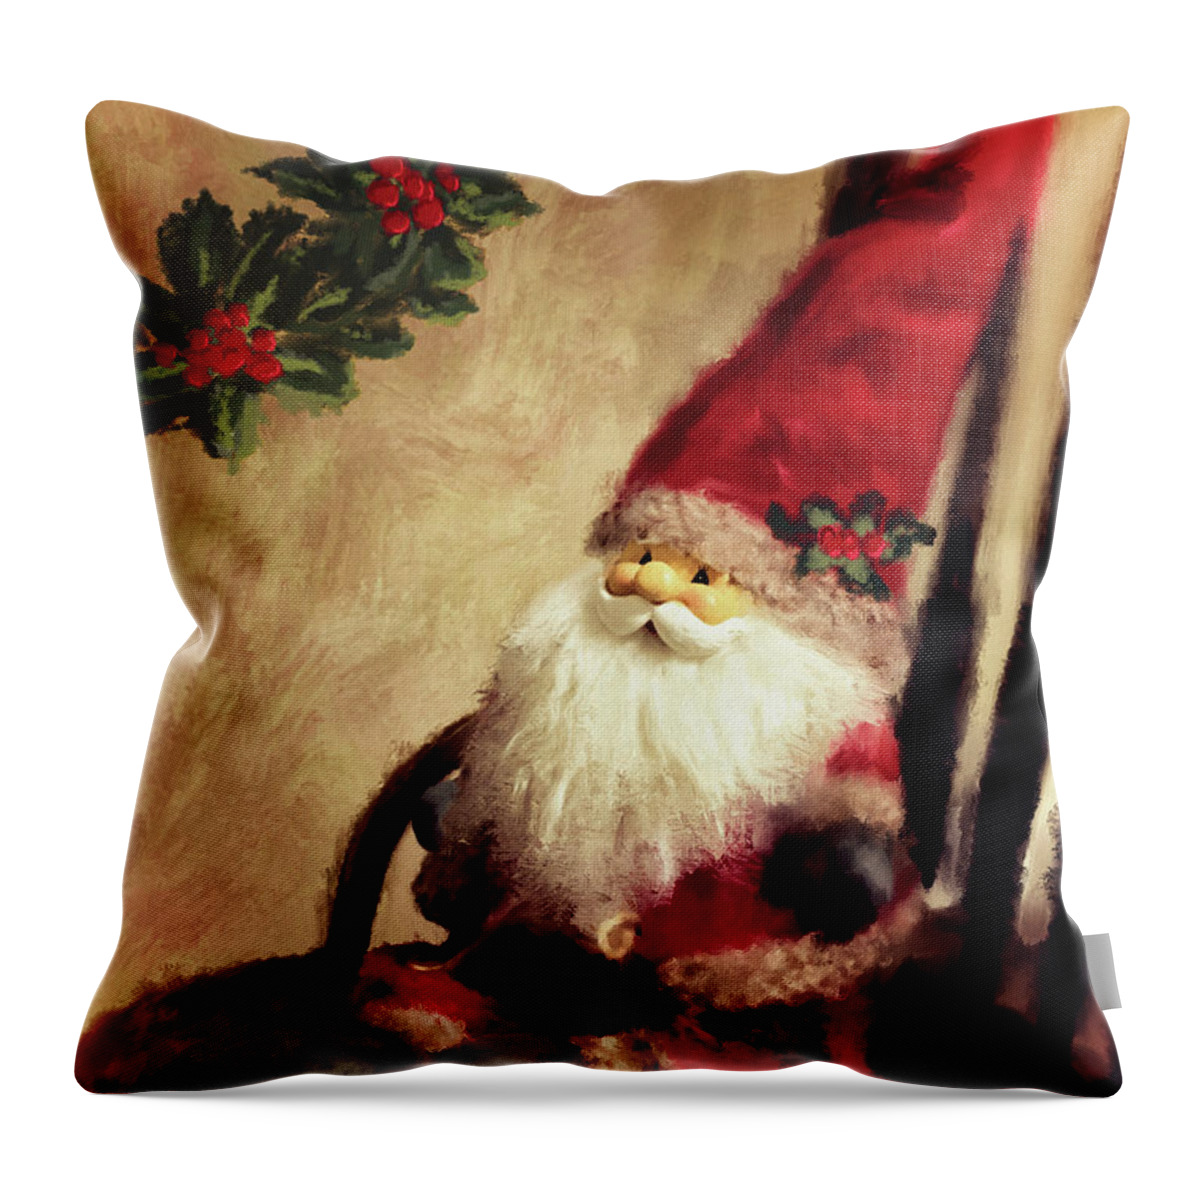 Santa Throw Pillow featuring the digital art Santa Gnome Takes A Break by Lois Bryan